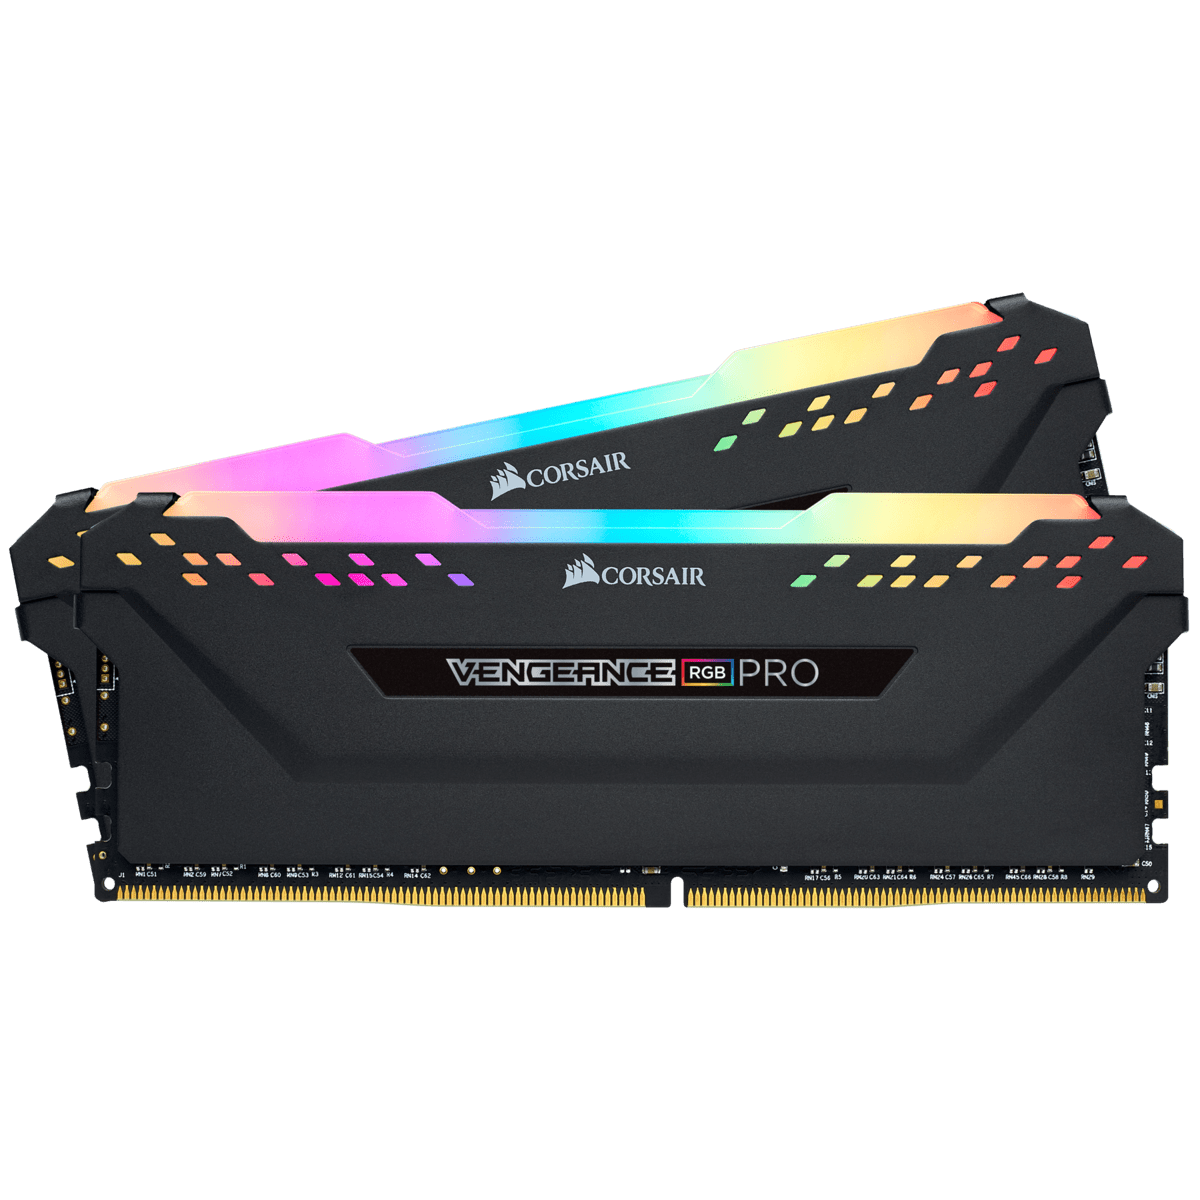 Corsair Vengeance RGB Pro 32Go (2x16Go) DDR4 3000MHz - Mémoire PC Corsair sur Cybertek.fr - 1